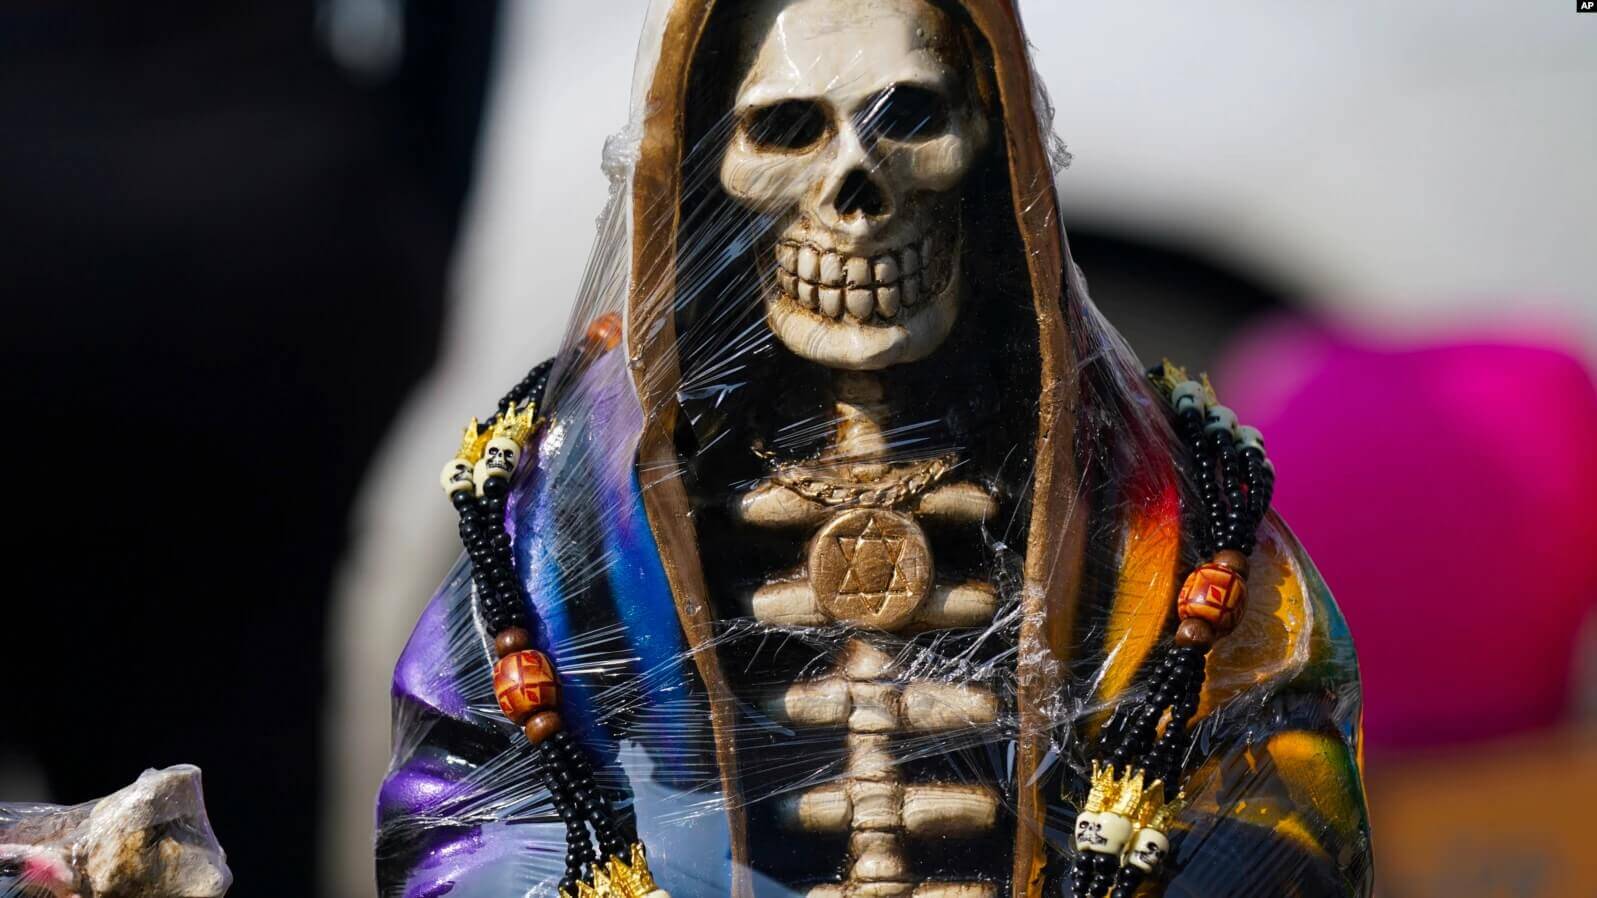 Los vendedores exhiben estatuas ornamentadas de "La Santa Muerte", en el barrio de Tepito de la Ciudad de México, el martes 1 de noviembre de 2022.